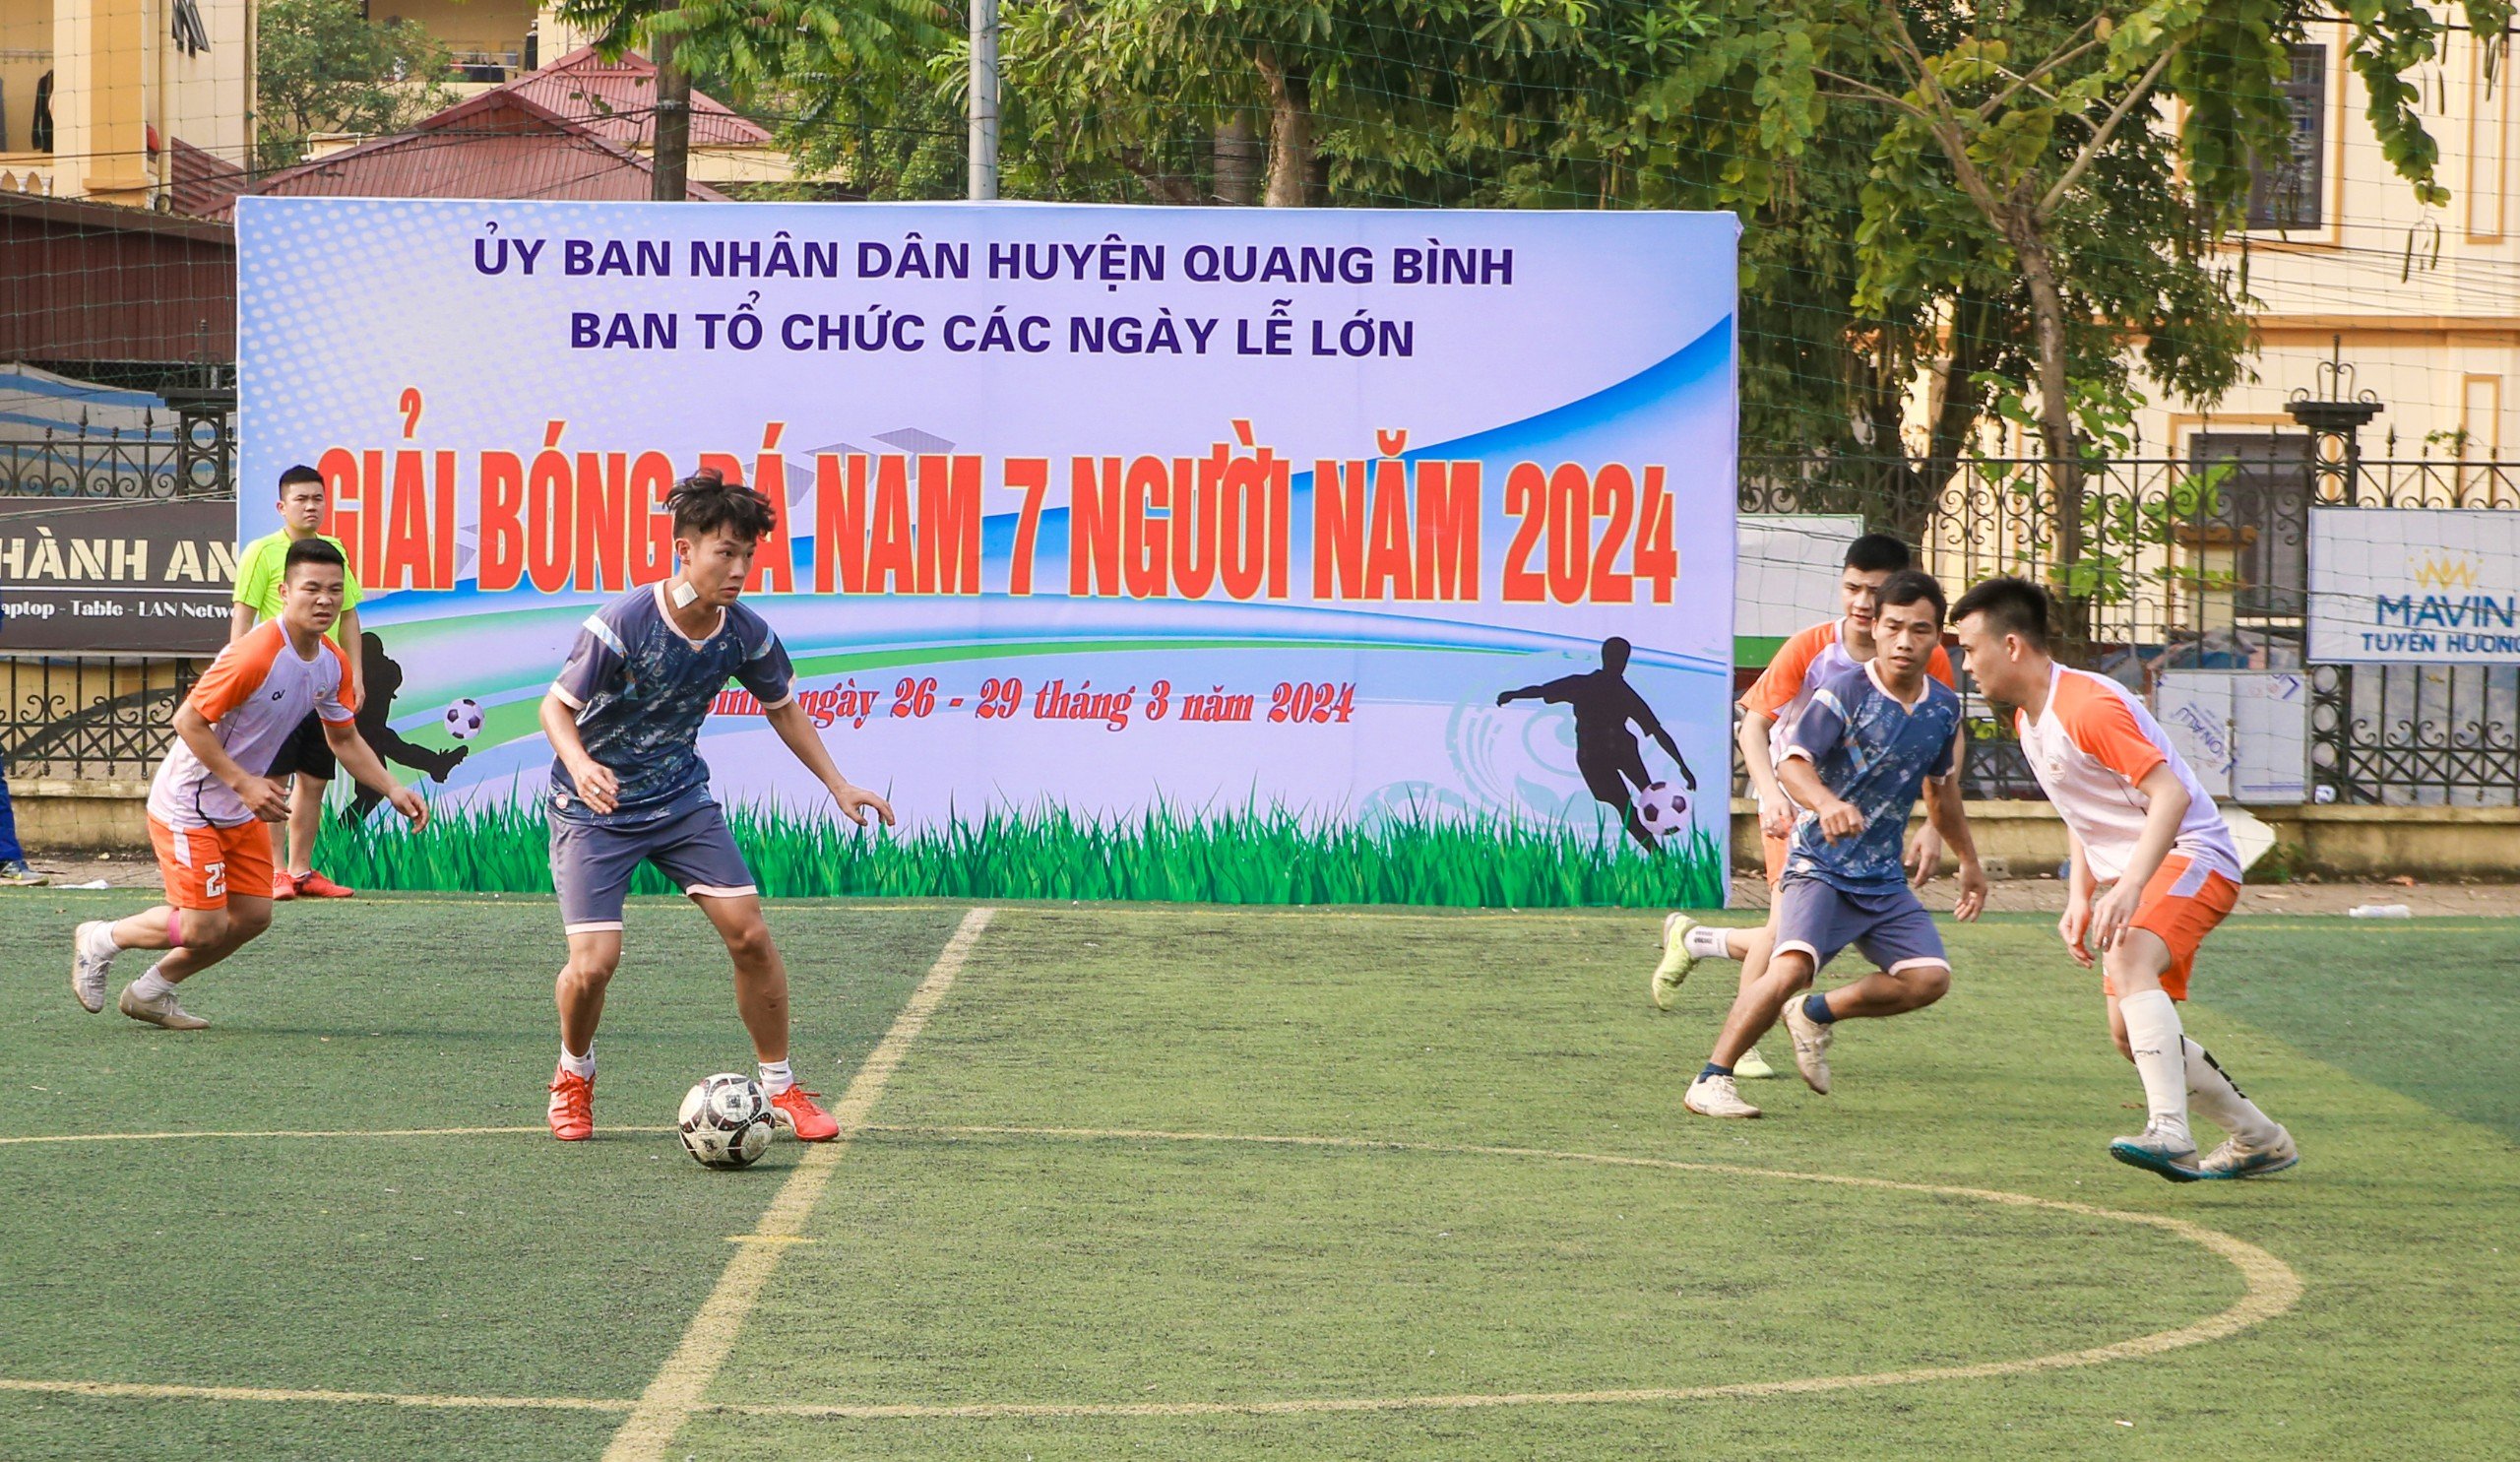 Quang Bình: Bế mạc Giải bóng đá nam 7 người năm 2024